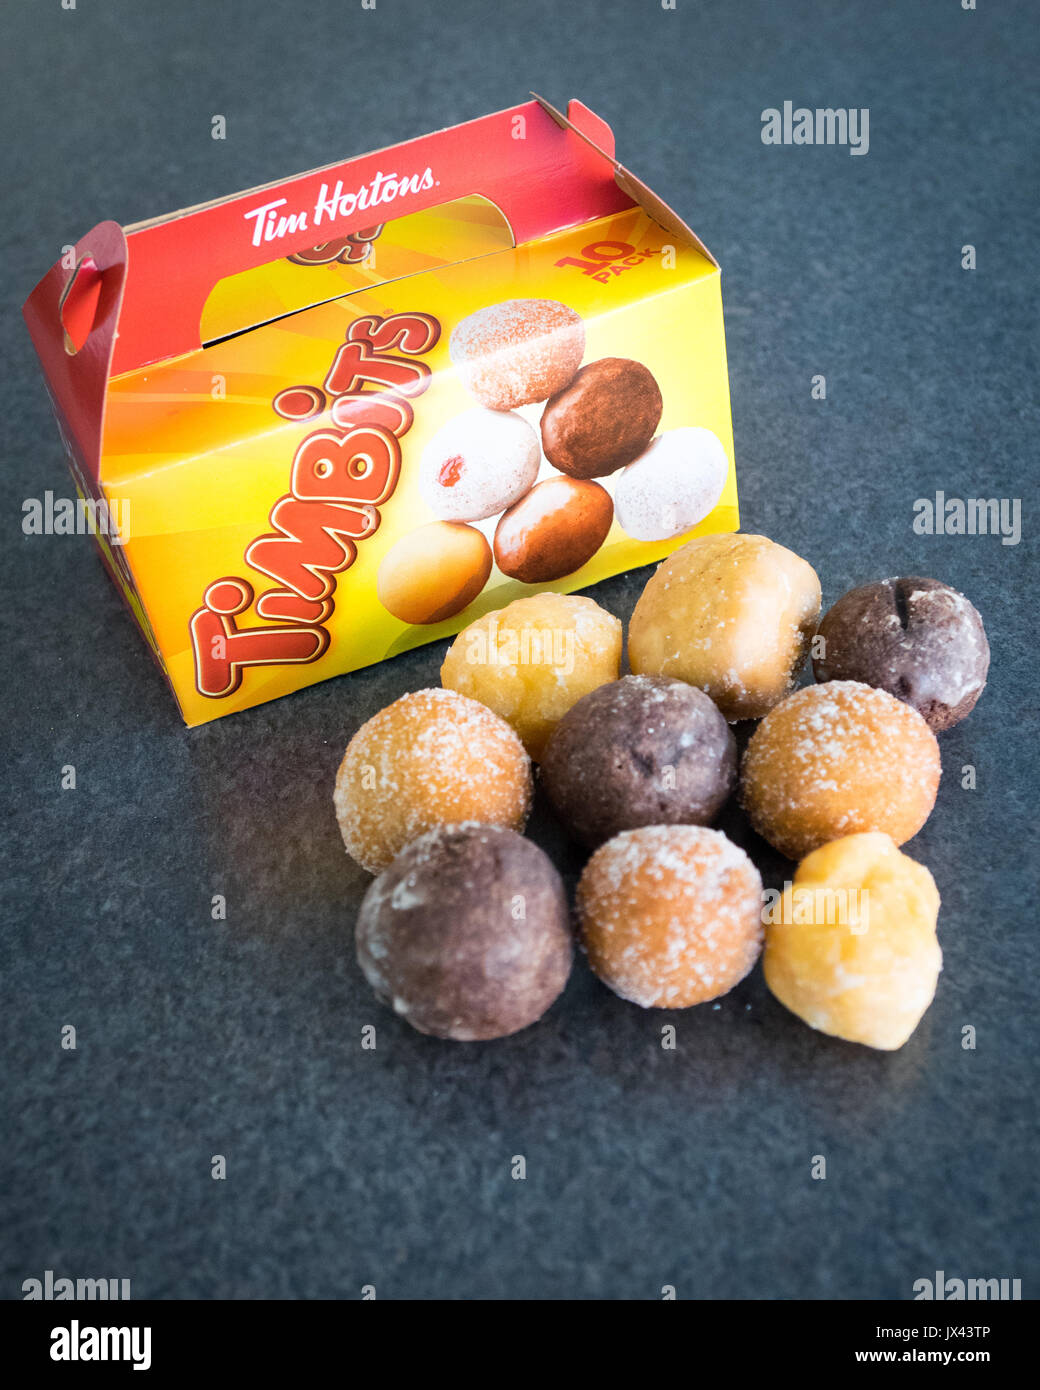 Timbits (agujeros de donut, donut agujeros) de Tim Hortons, una conocida cadena de restaurantes de comida rápida de Canadá. Foto de stock